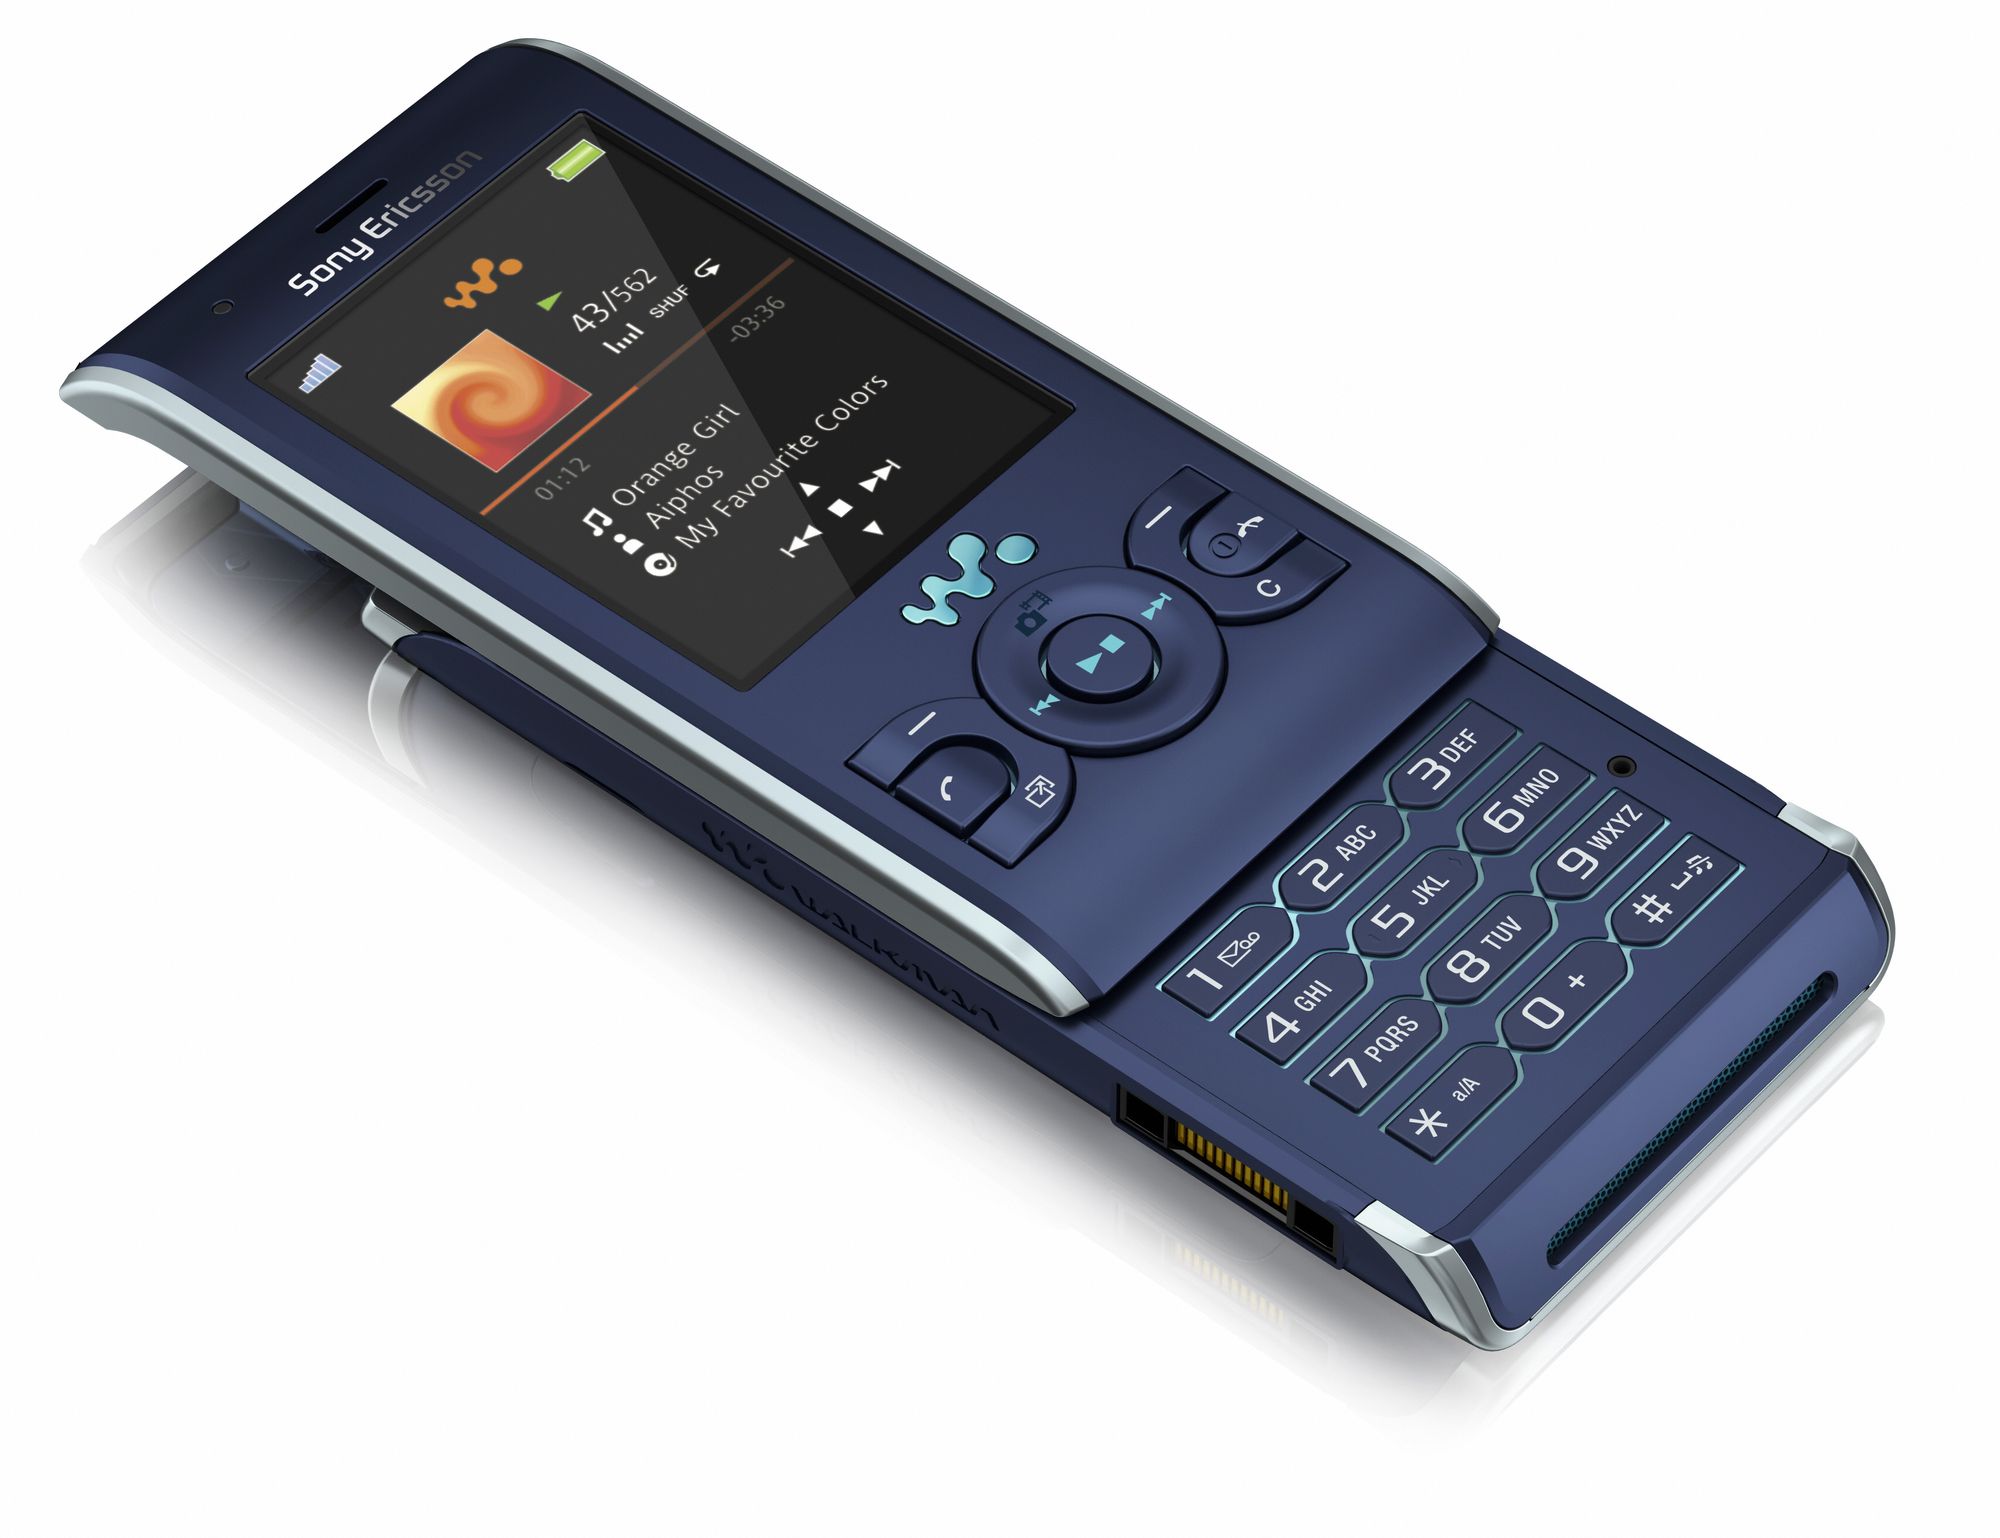 Sony Ericsson Walkman w595